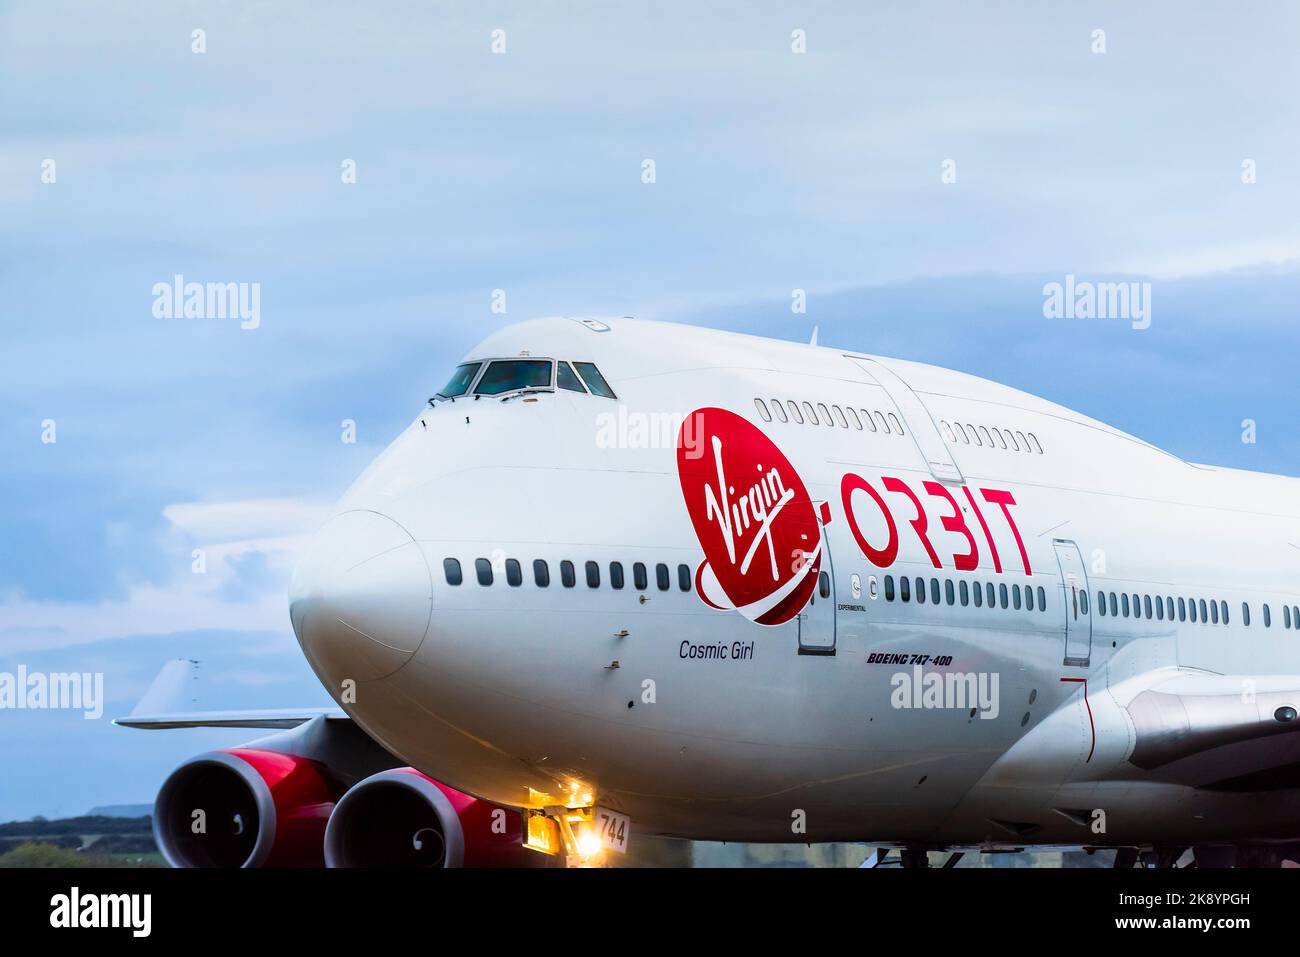 Nahaufnahme des Firmenlogos und Lackierung auf der Virgin Orbit, Cosmic Girl, einer 747-400, die zu einer Raketenstartplattform mit Rolling-to-A umgebaut wurde Stockfoto